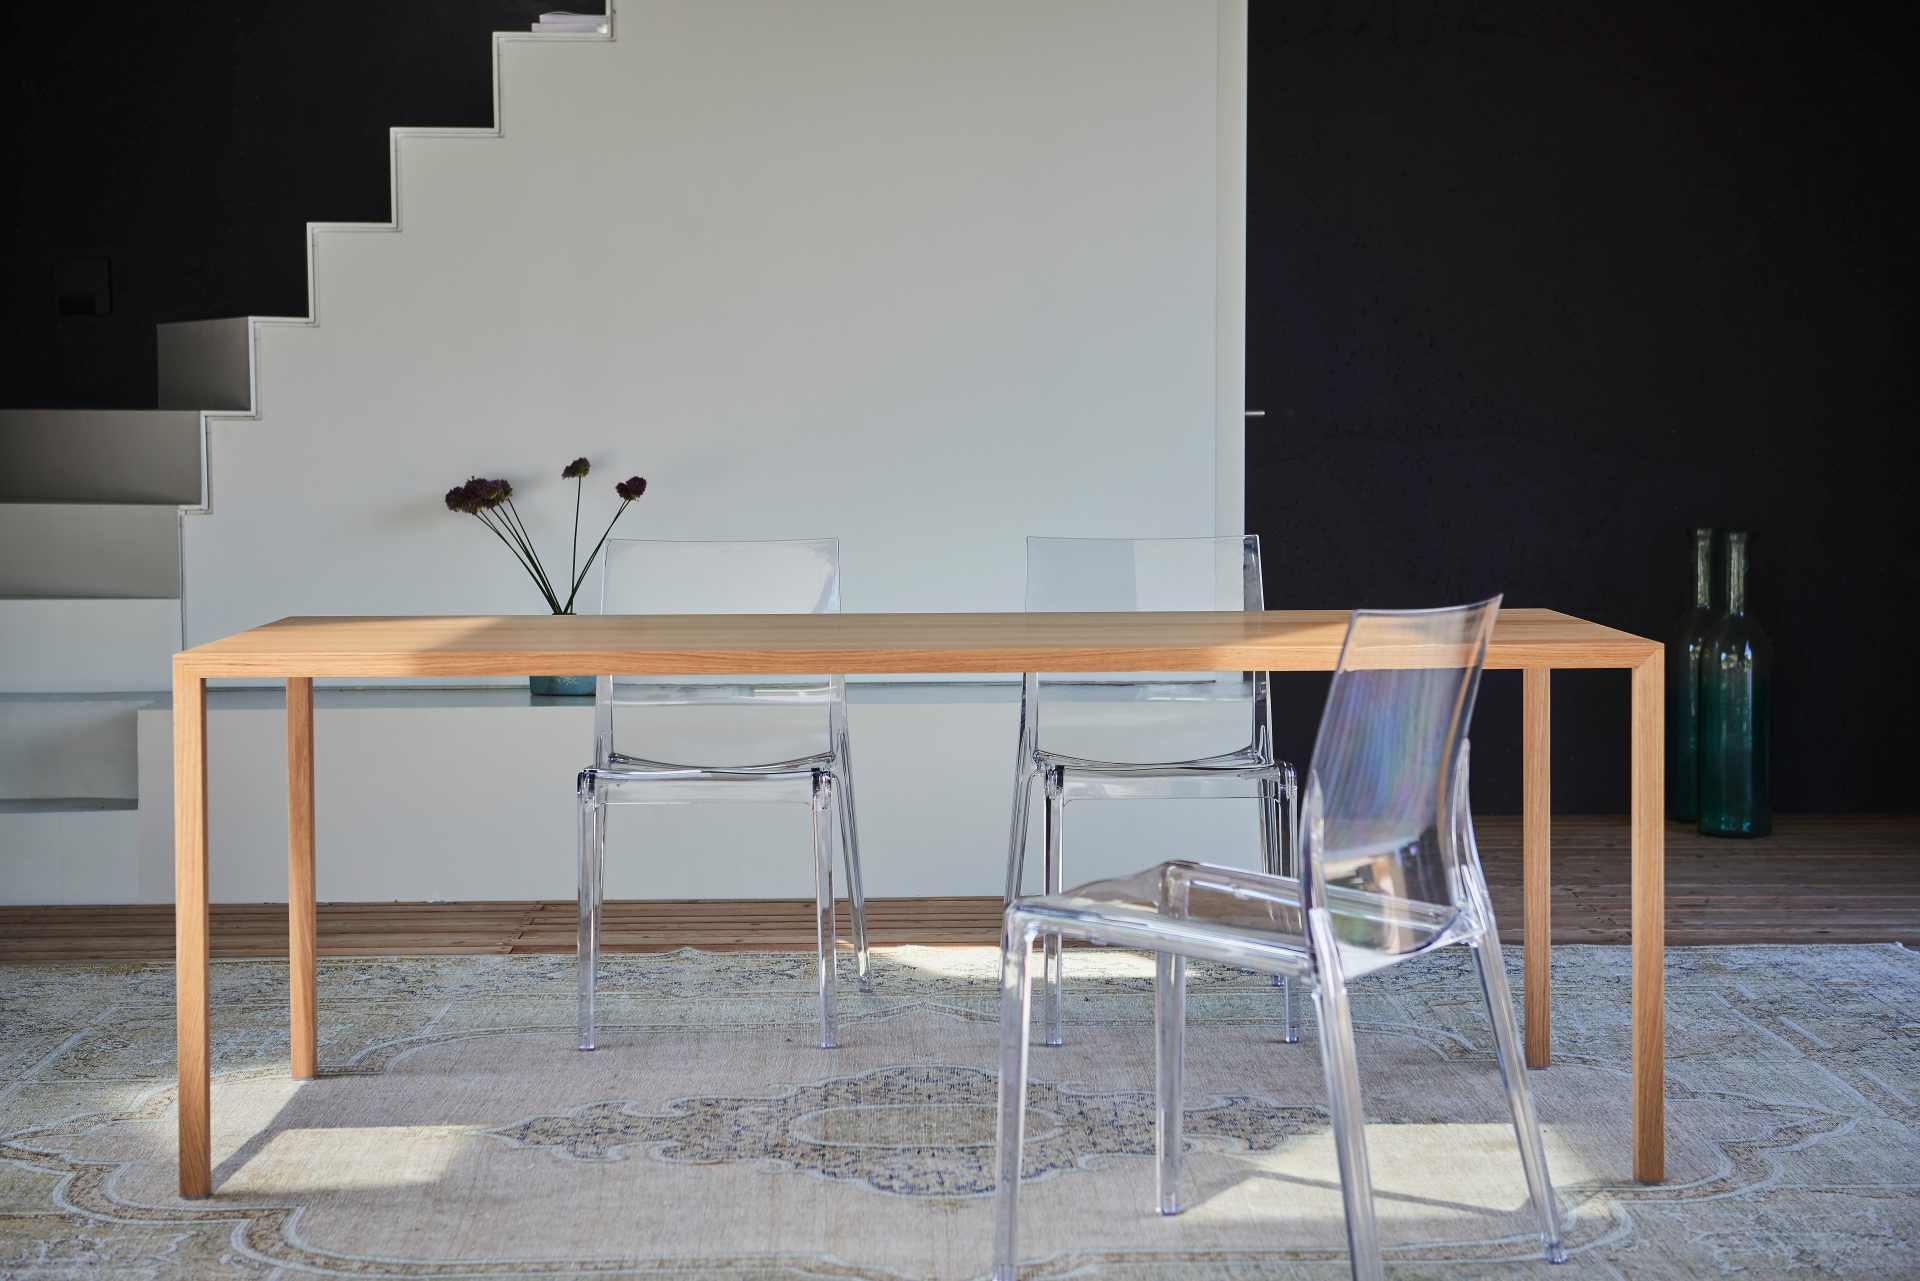 Der schlichte Tisch Cloud der Marke Jan Kurtz überzeugt mit seinem zeitlosen Design. Gefertigt wurde der Tisch aus Echtholzfurnier und hat eine natürliche Farbe. Die Länge des Tisches ist 200 cm.